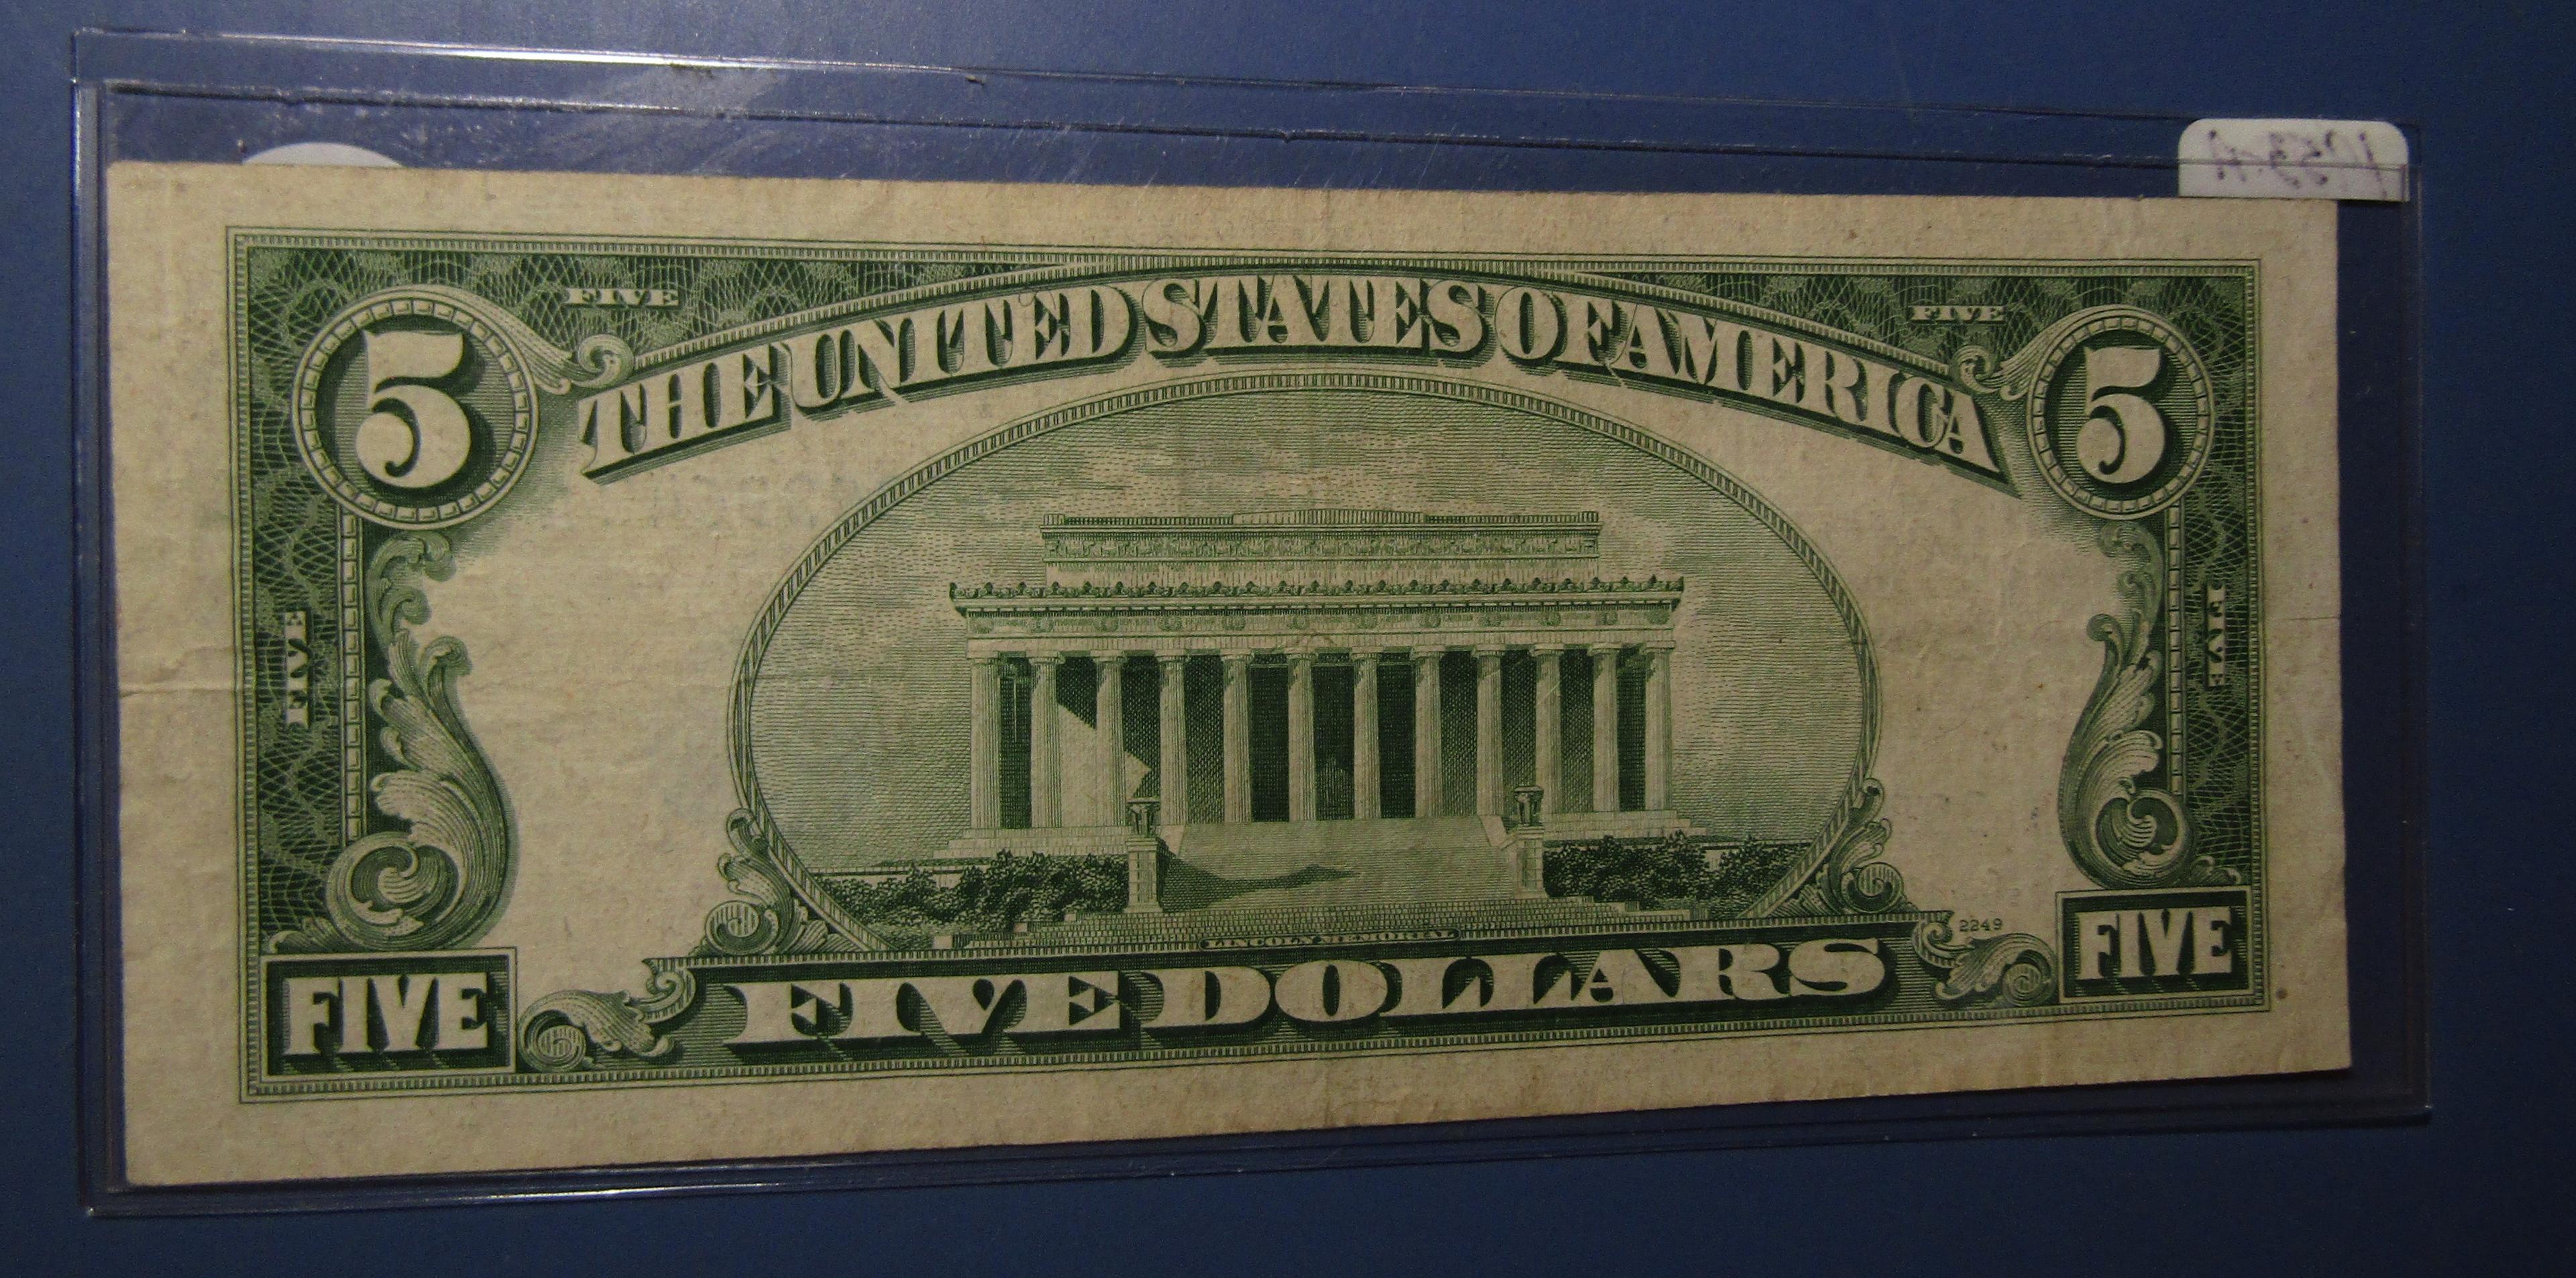 1953-A $5.00 SILVER CERTIFICATE NOTE XF/AU